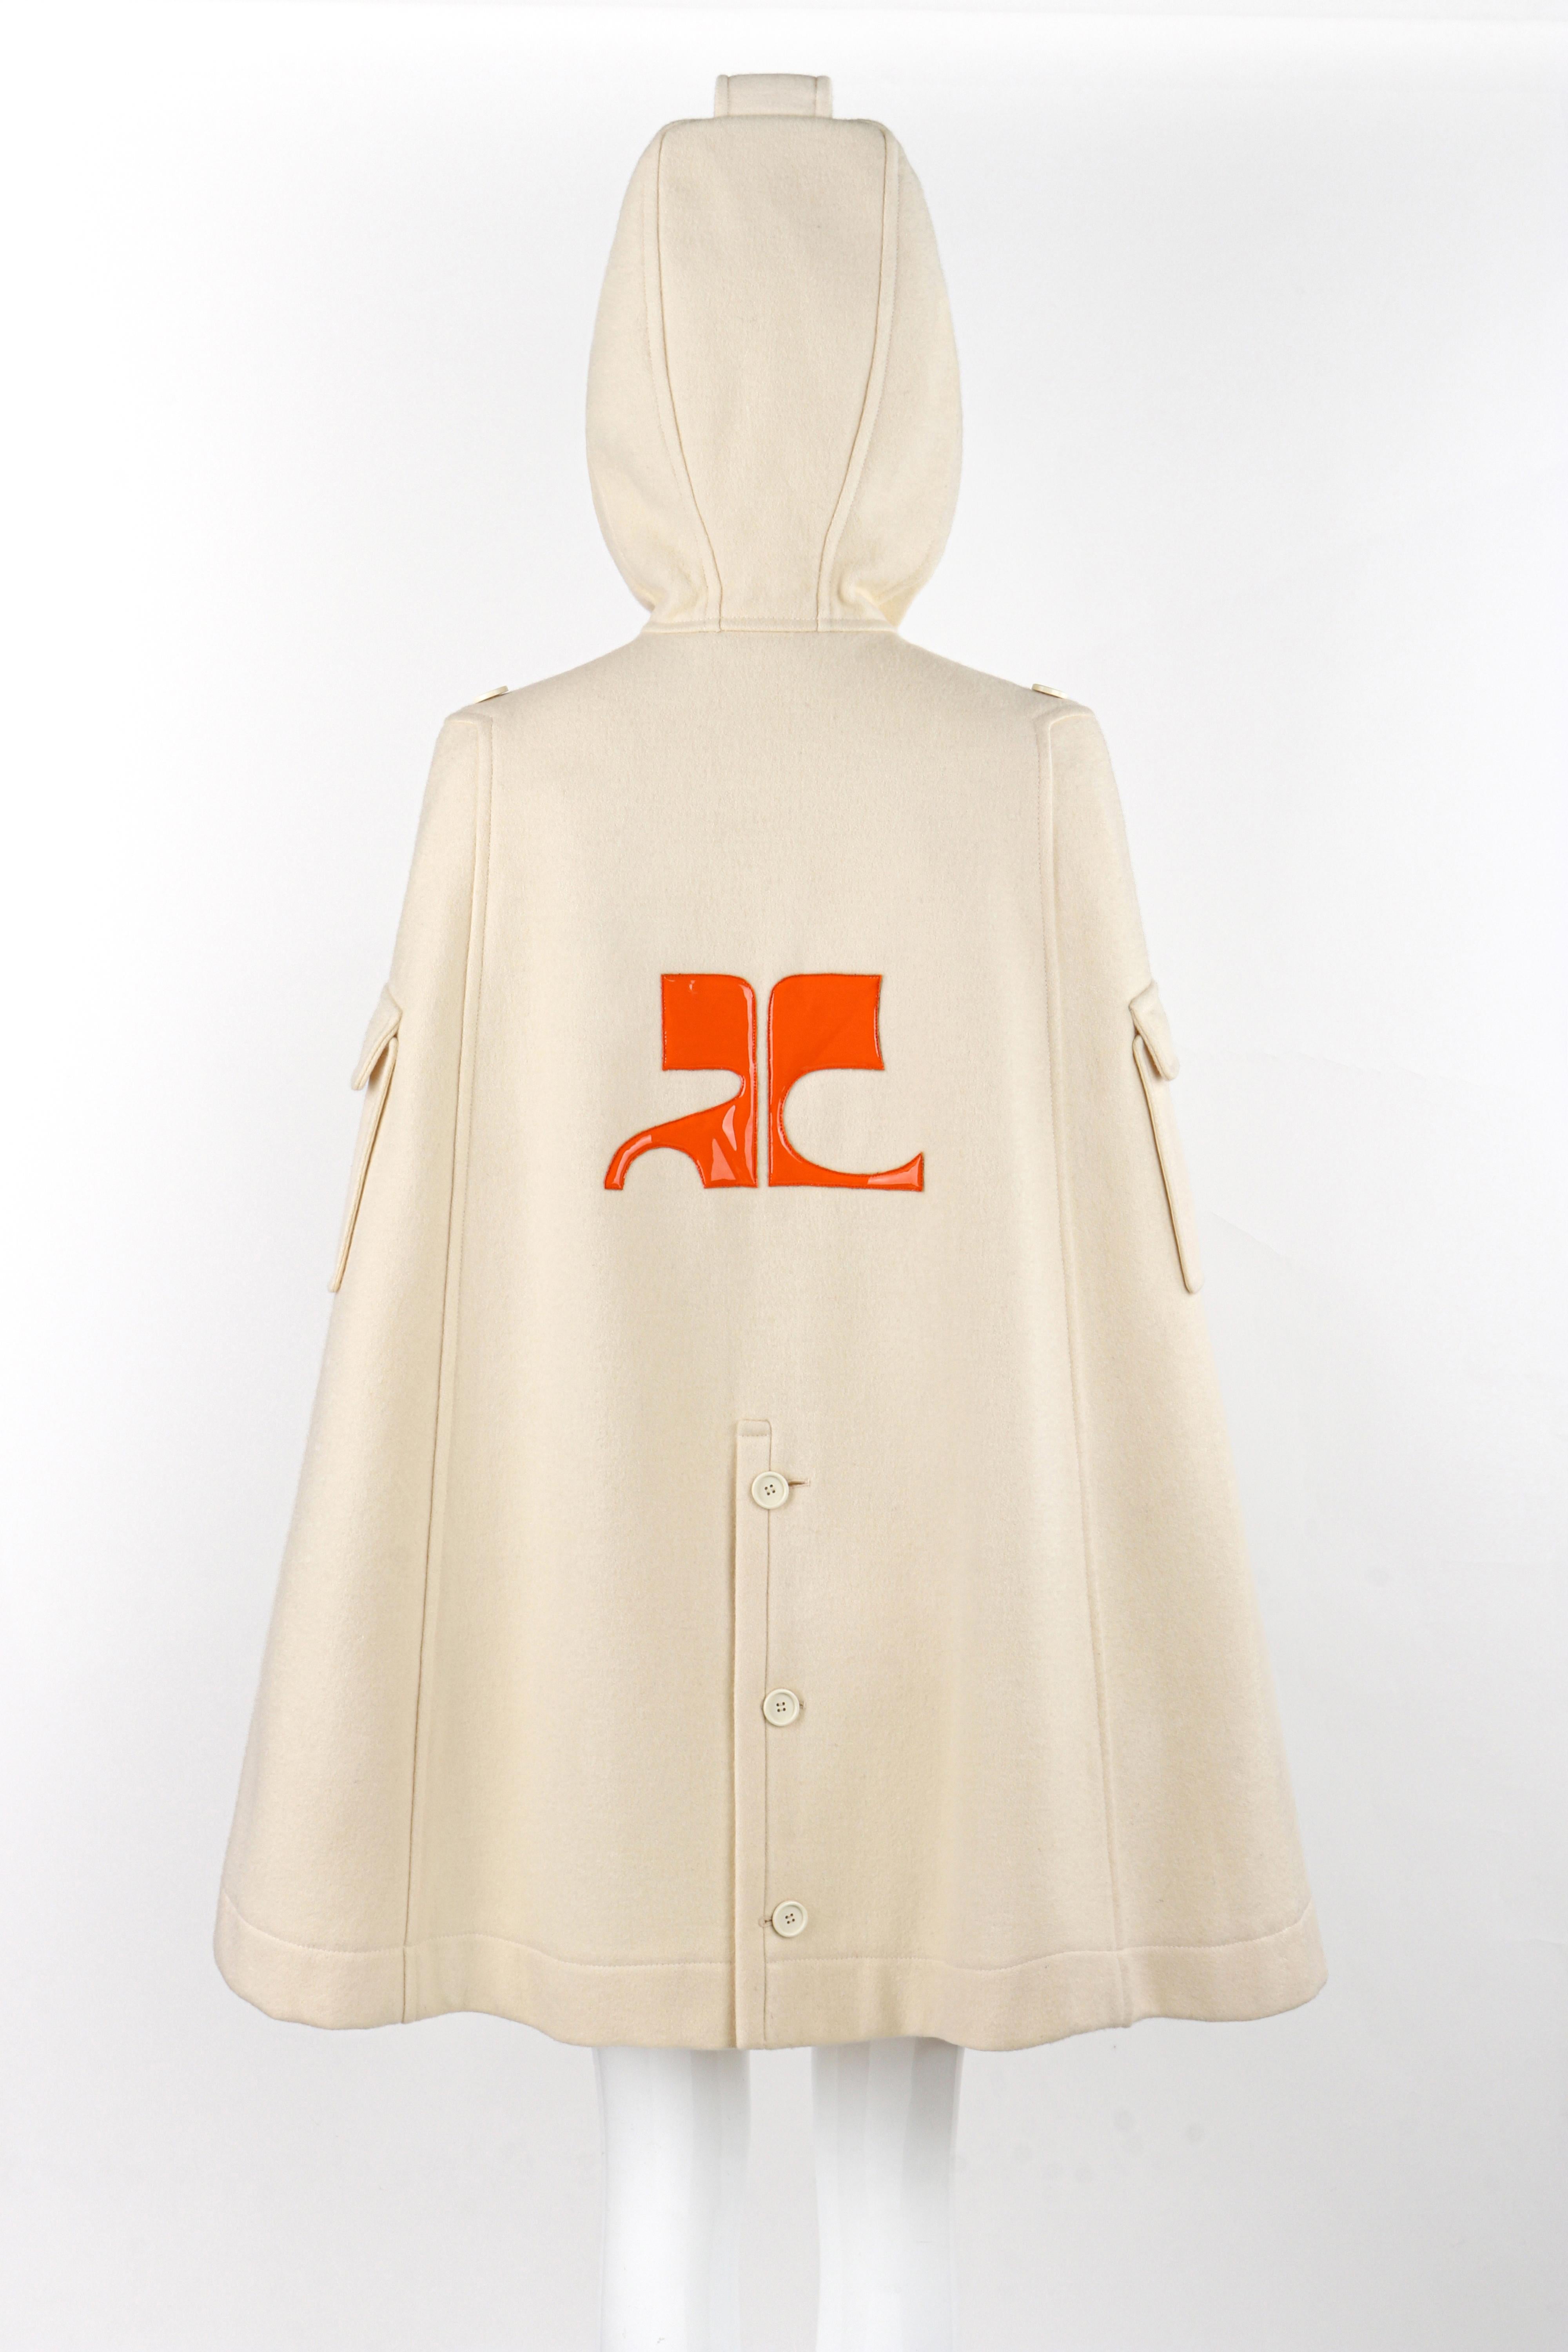 COURREGES Hyperbole c.1970's Ivory Wool Orange Patent Leather Logo Hooded Cape 2